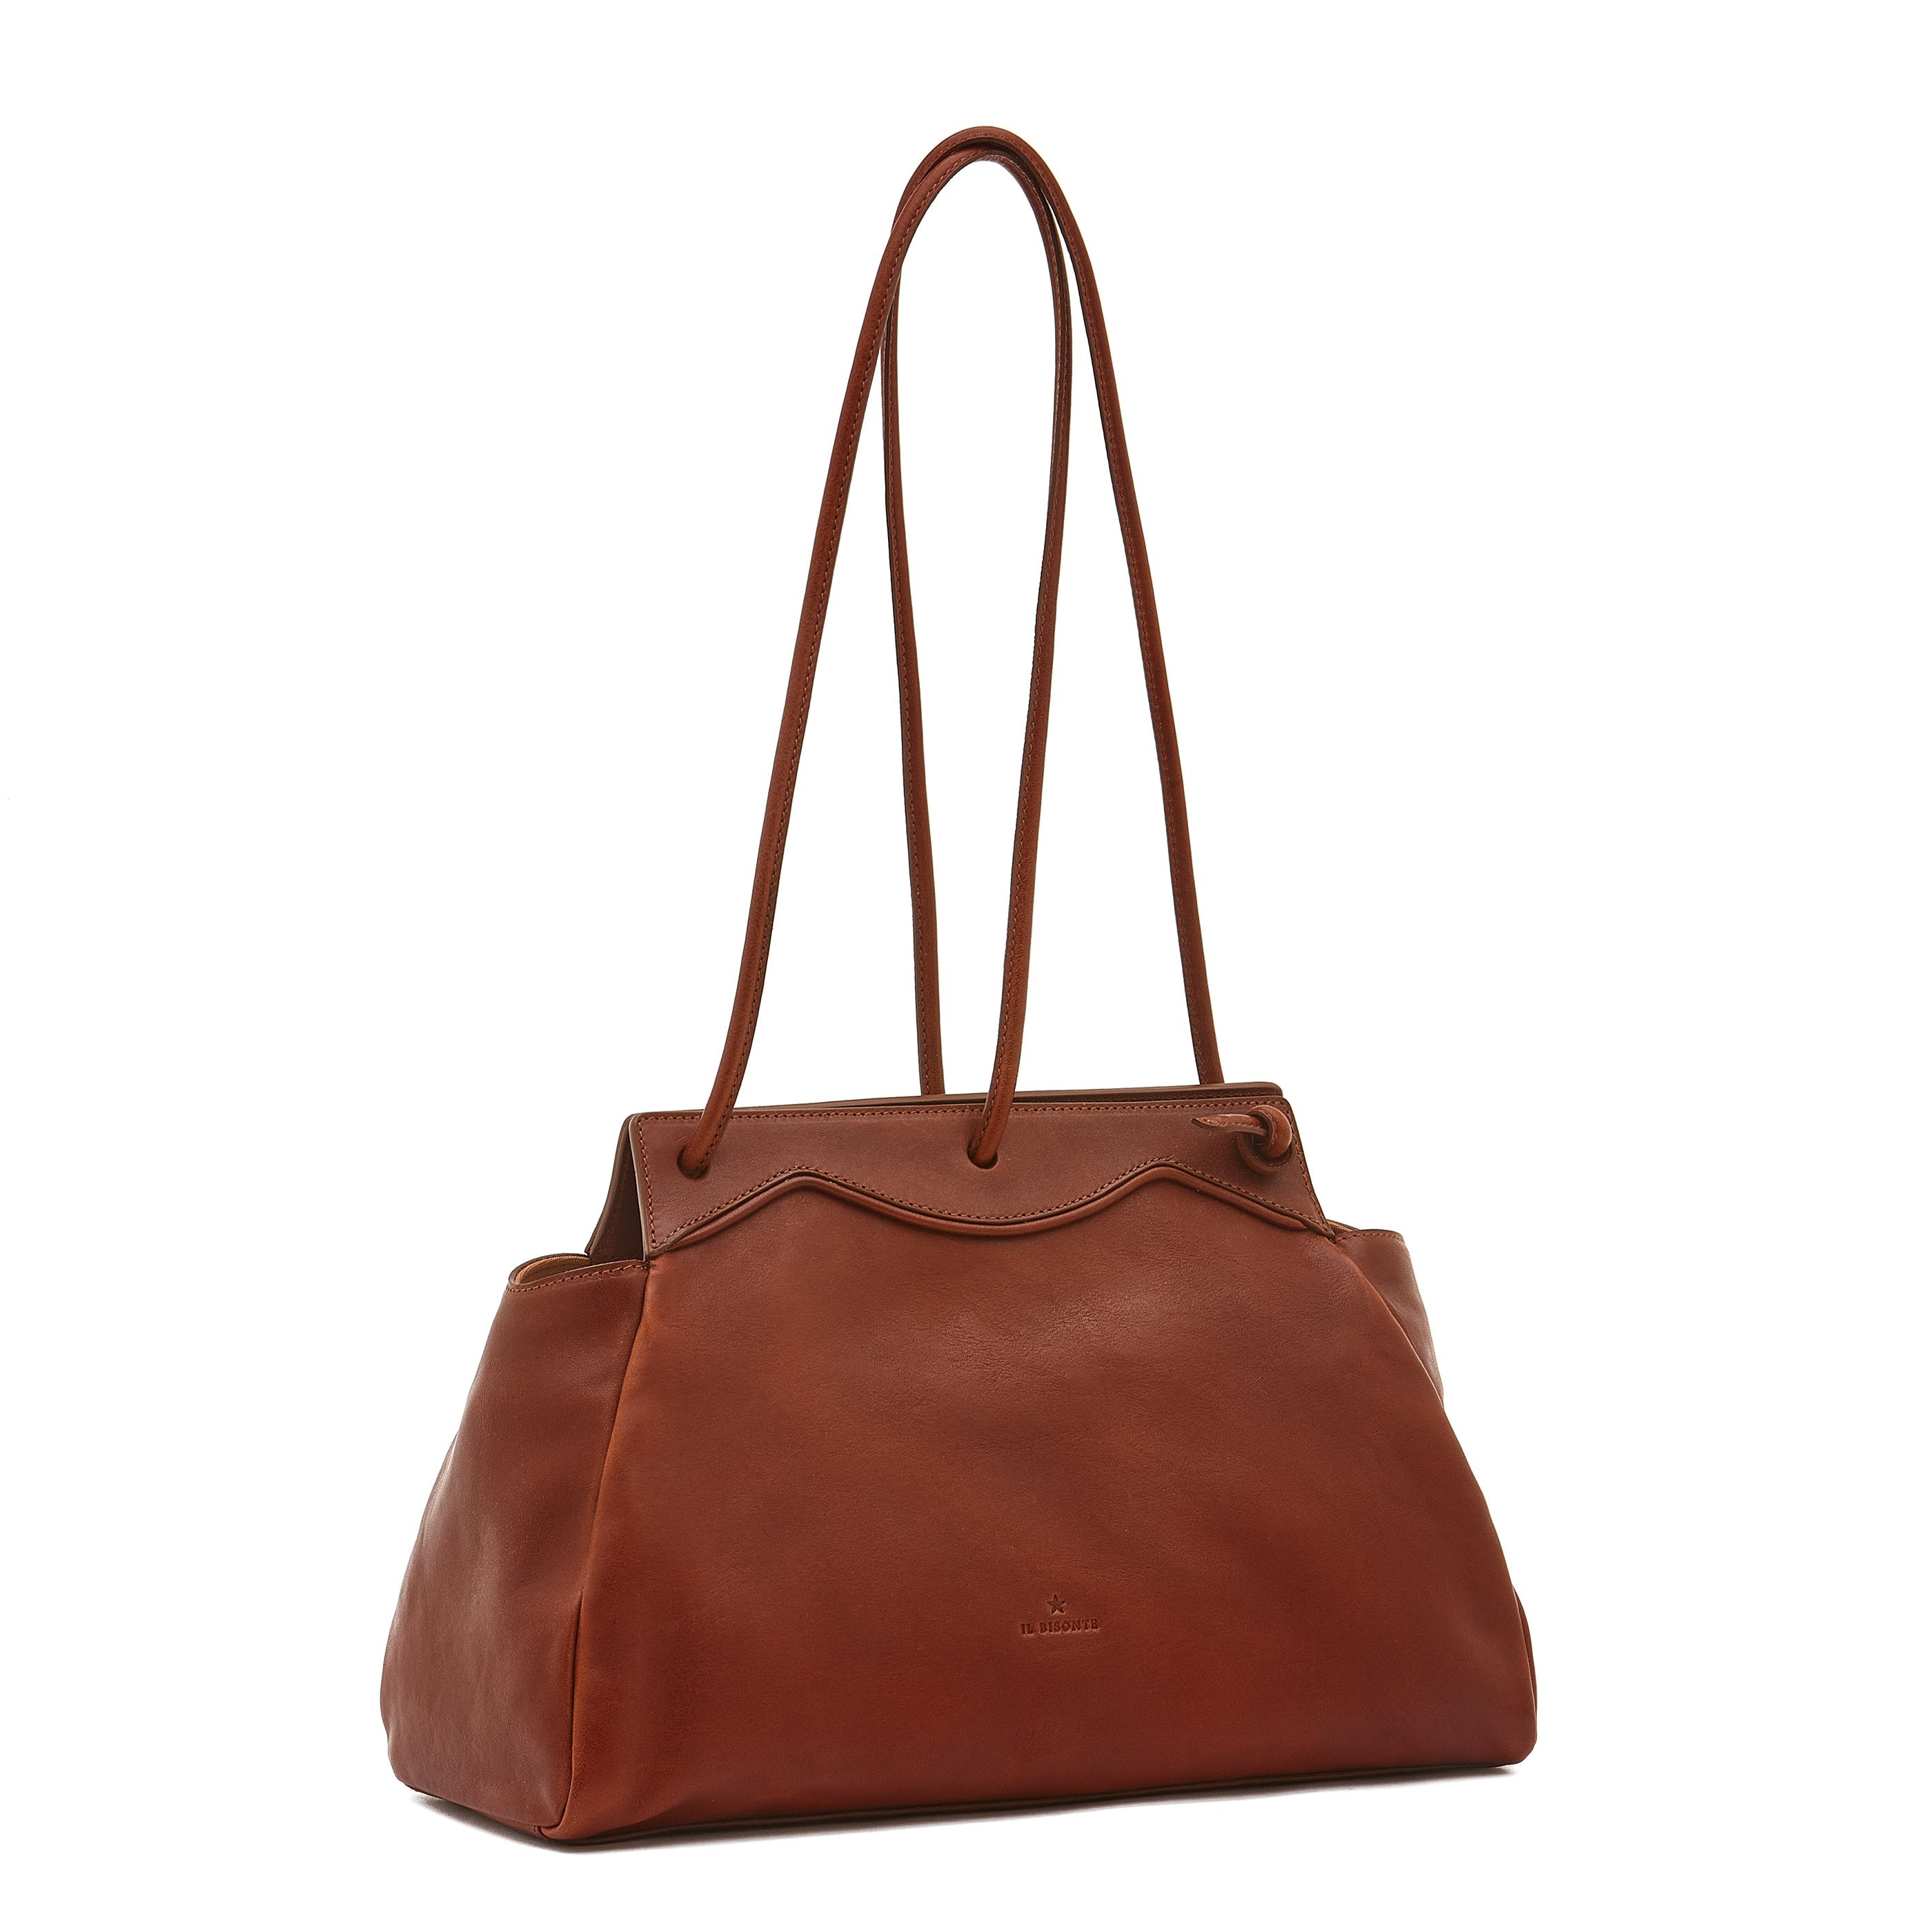 Sguardo | Women's shoulder bag in vintage leather color sepia